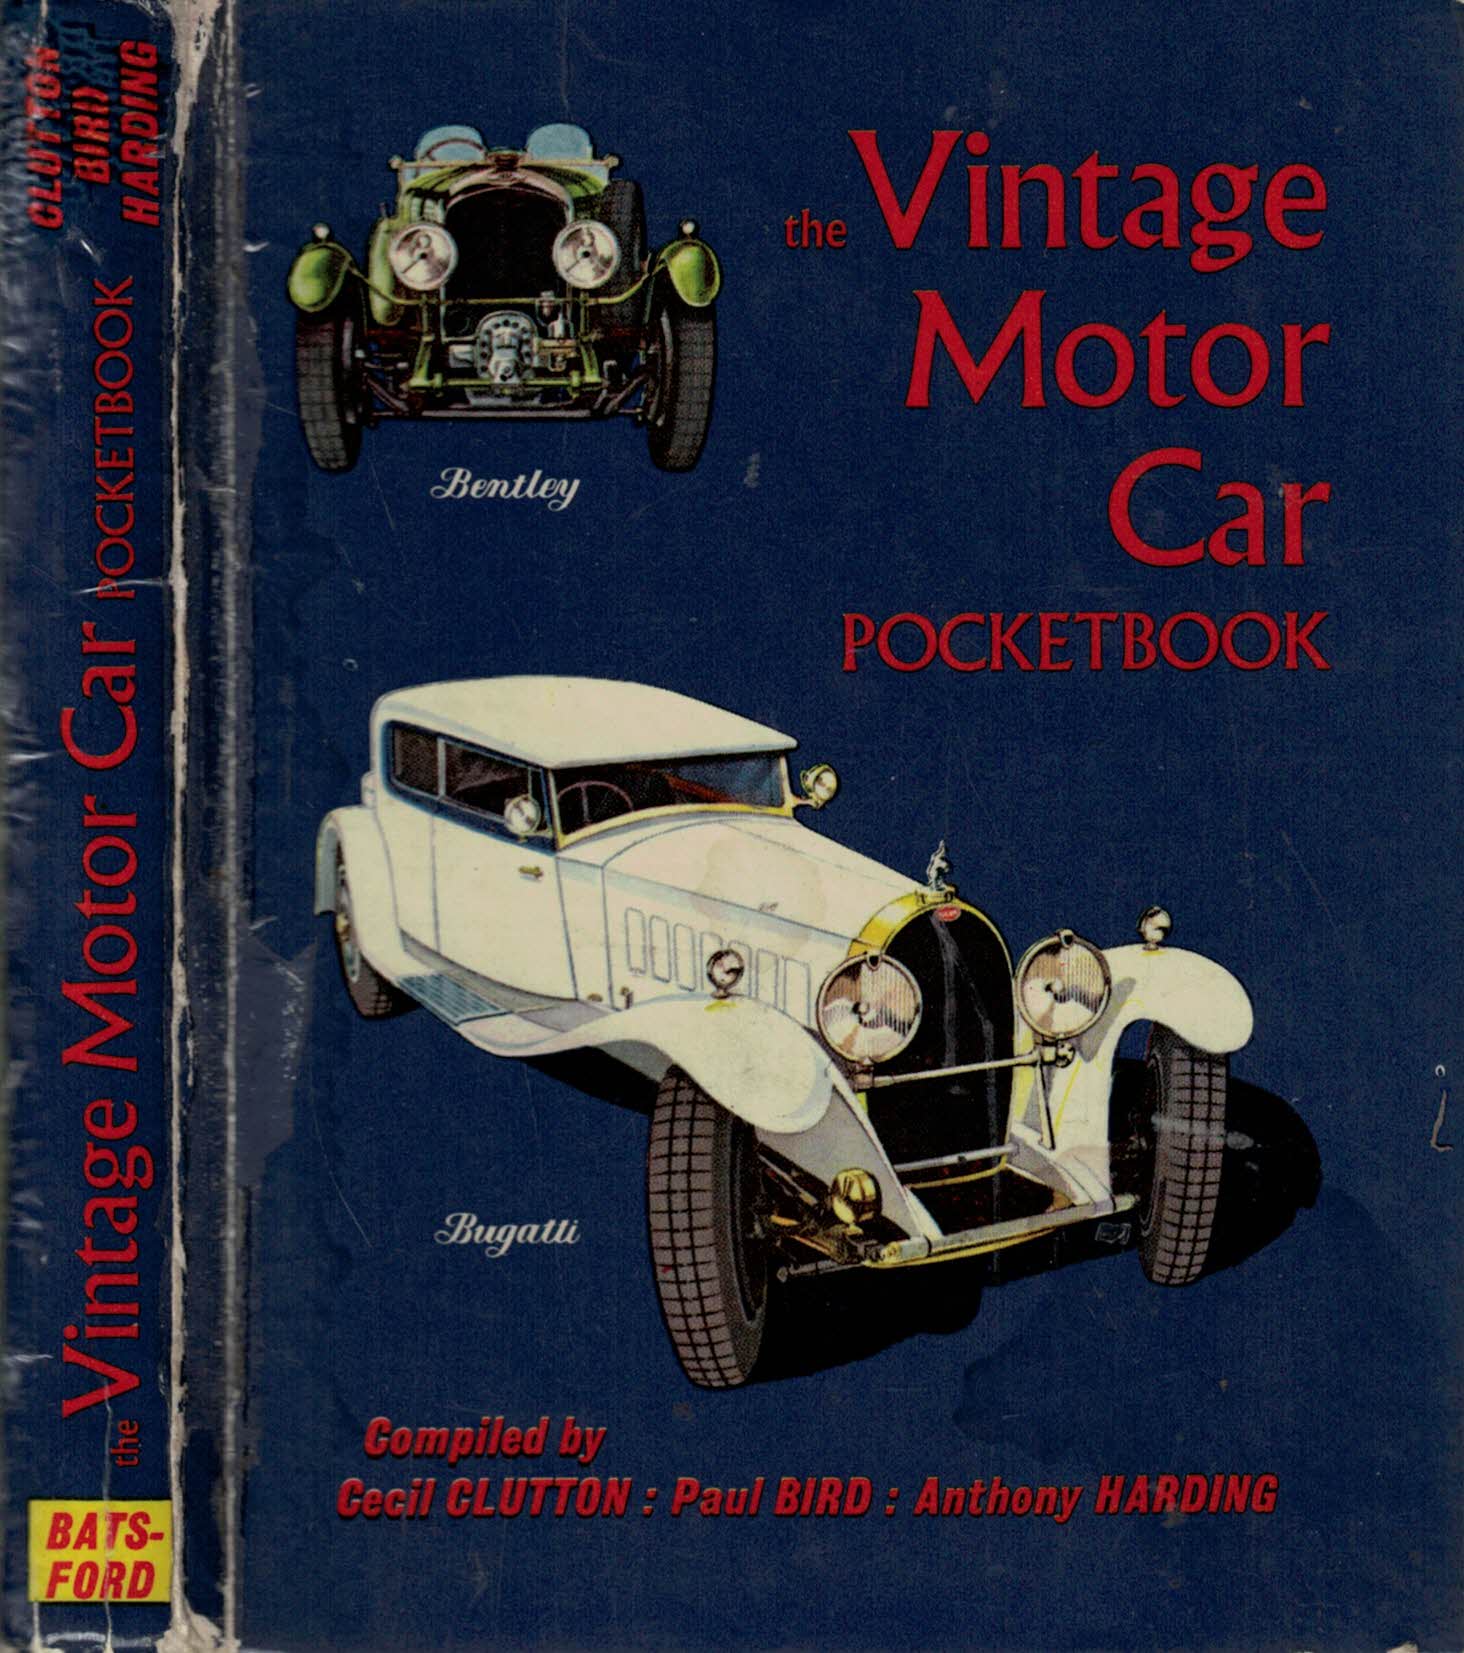 The Vintage Motor Car Pocketbook